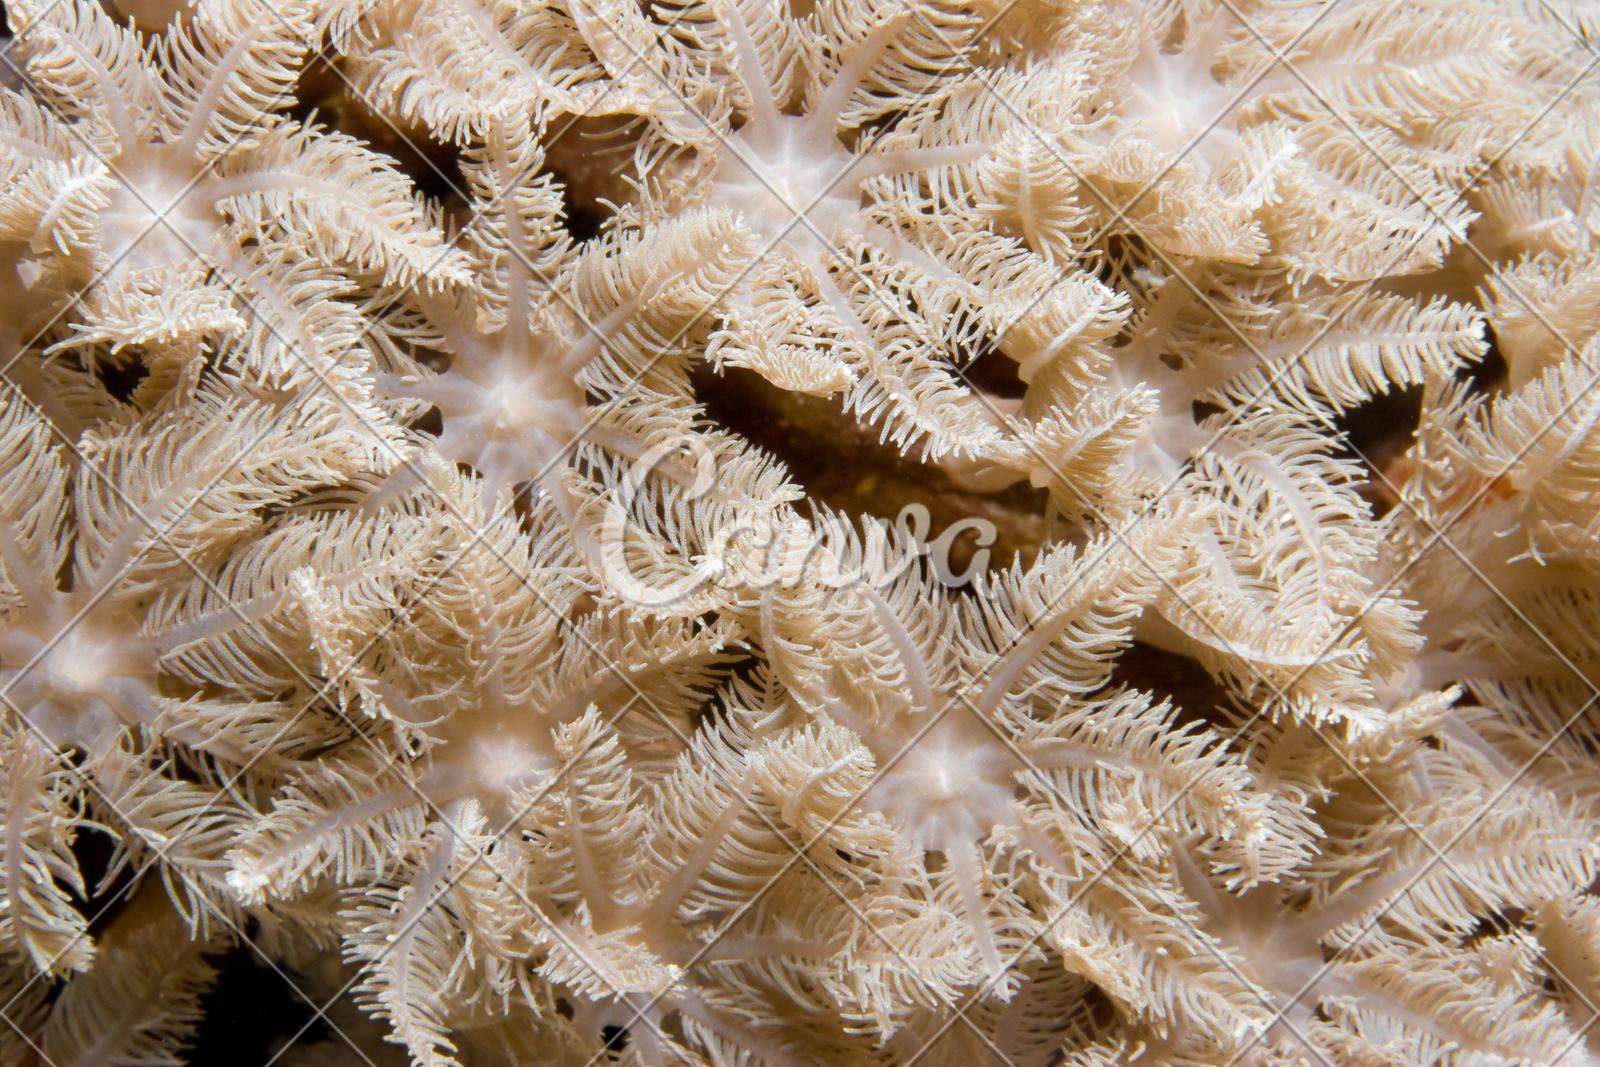 珊瑚无脊椎动物礁石彩色图片印度尼西亚珊瑚虫摄影海洋